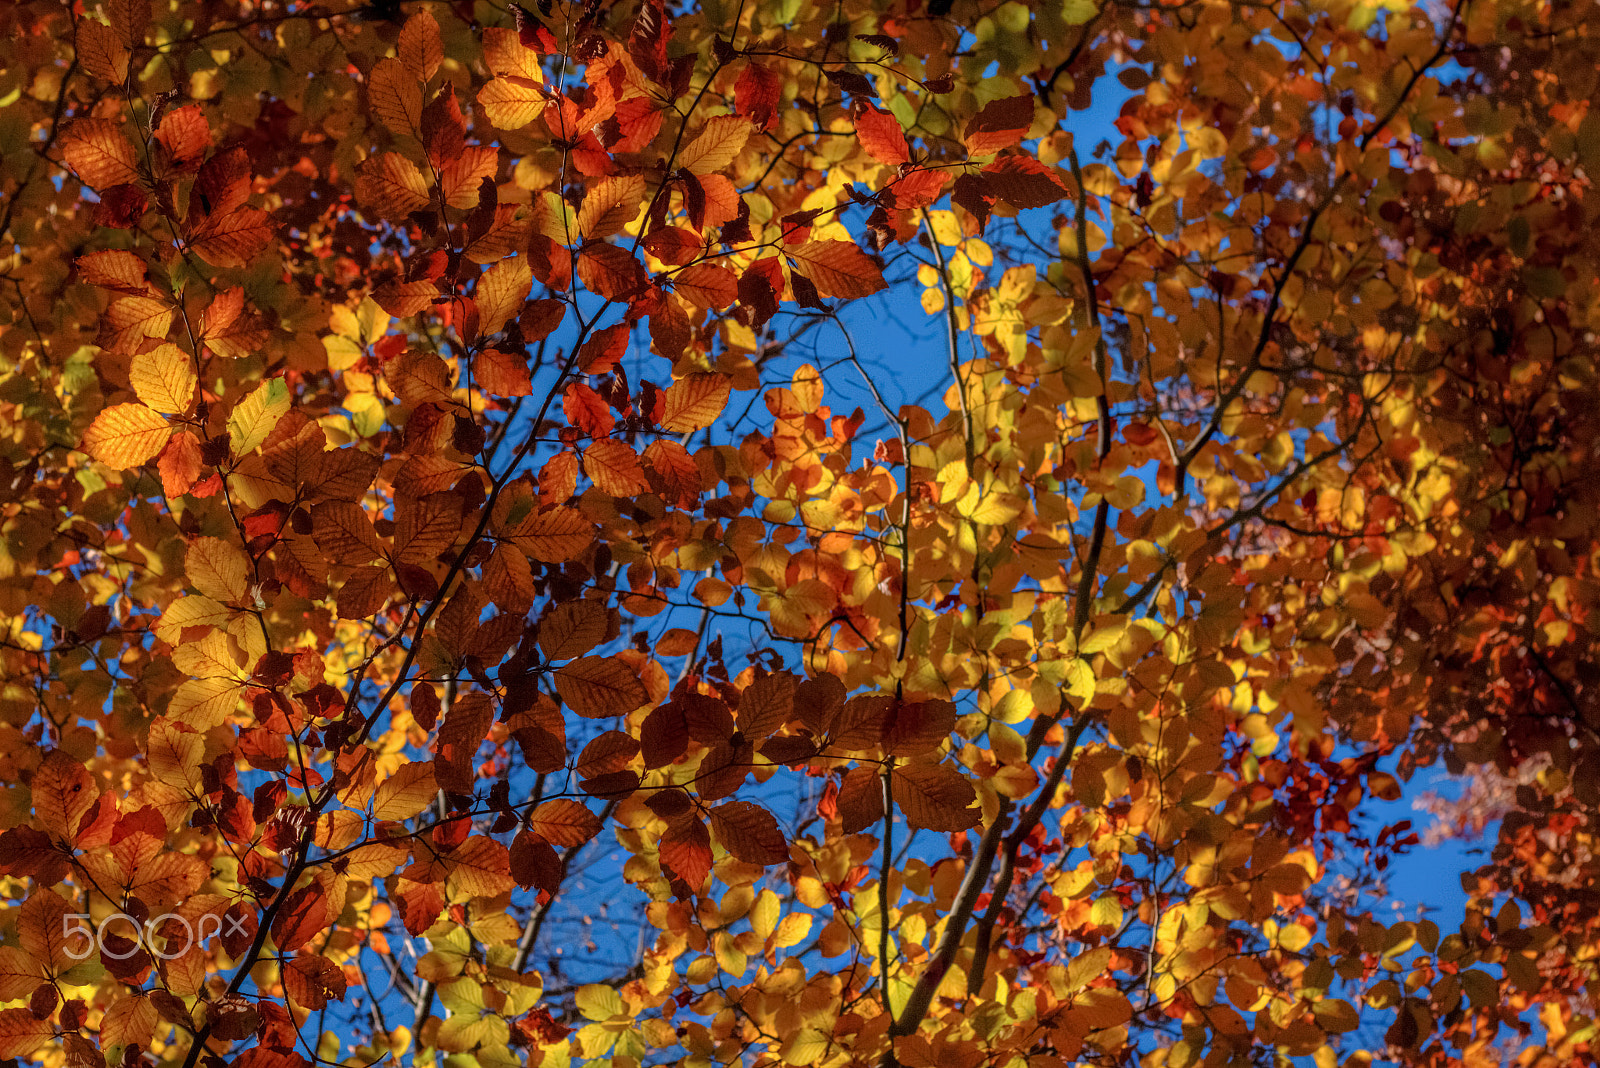 Canon EOS M + Canon EF 50mm F1.8 II sample photo. Autumn foliage photography